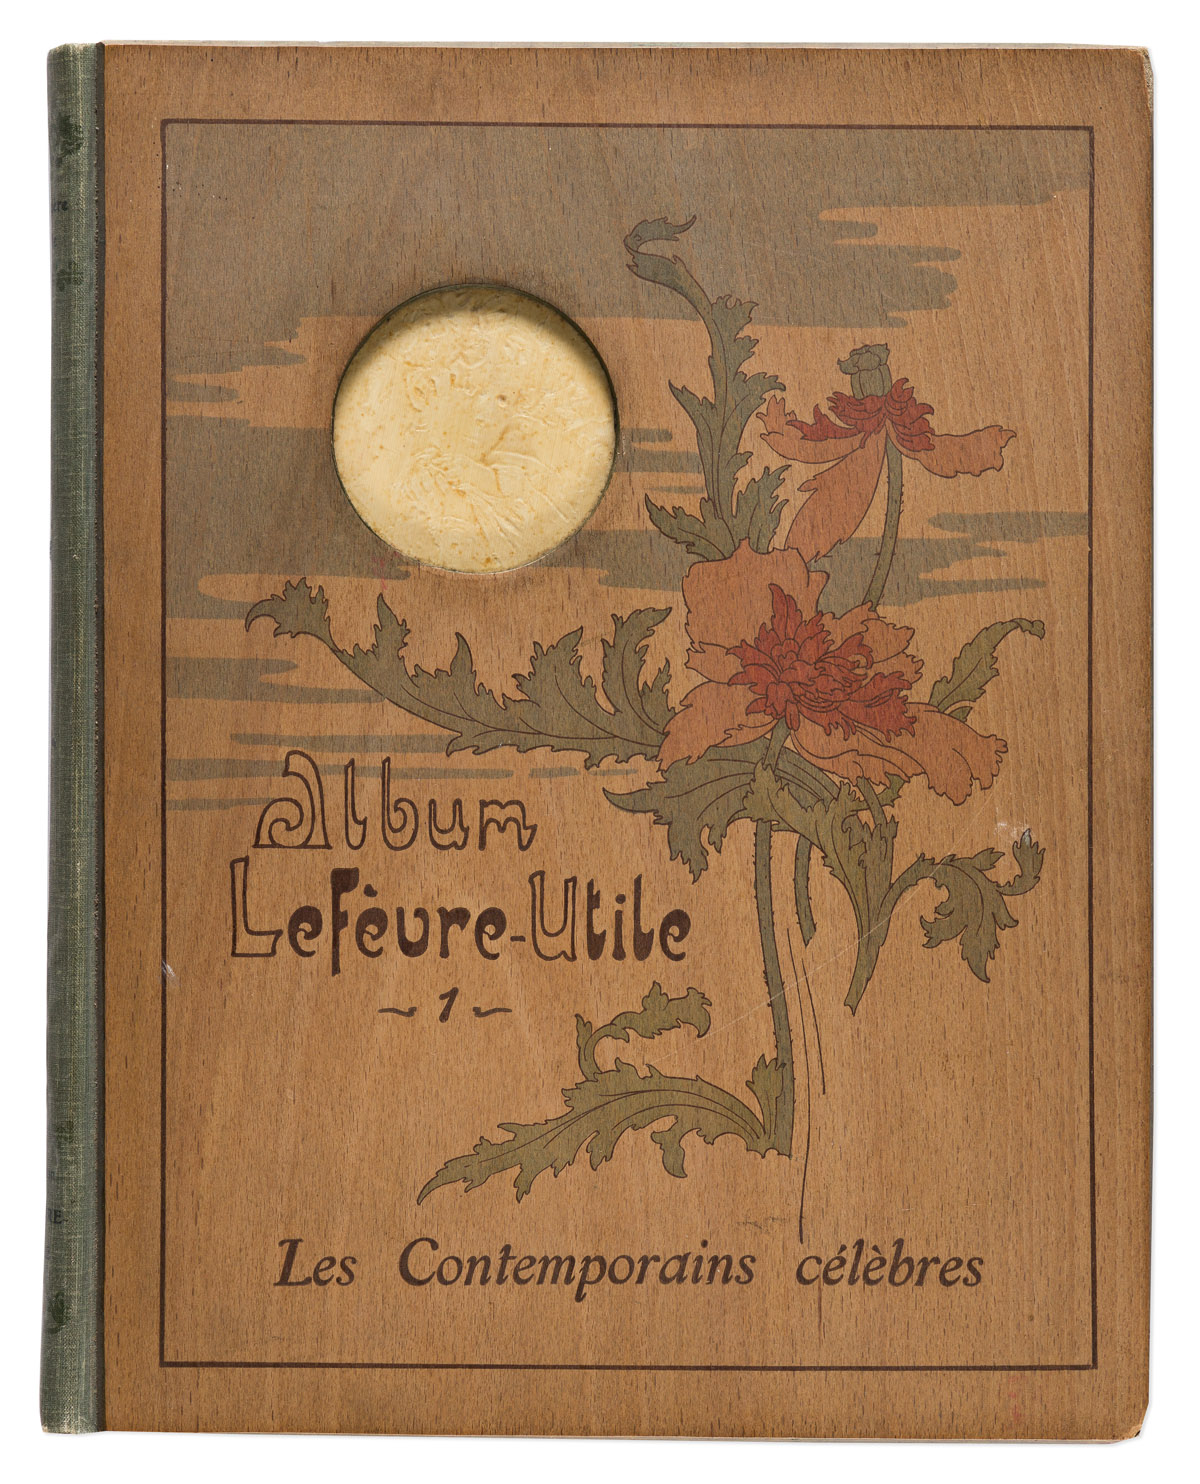 VARIOUS ARTISTS.  ALBUM LEFÈVRE - UTILE / LES CONTEMPORAINS CÉLÈBRES. Volume I. 1904. 13x10¼ inches, 33x26 cm. G. de Malherbe, Paris.